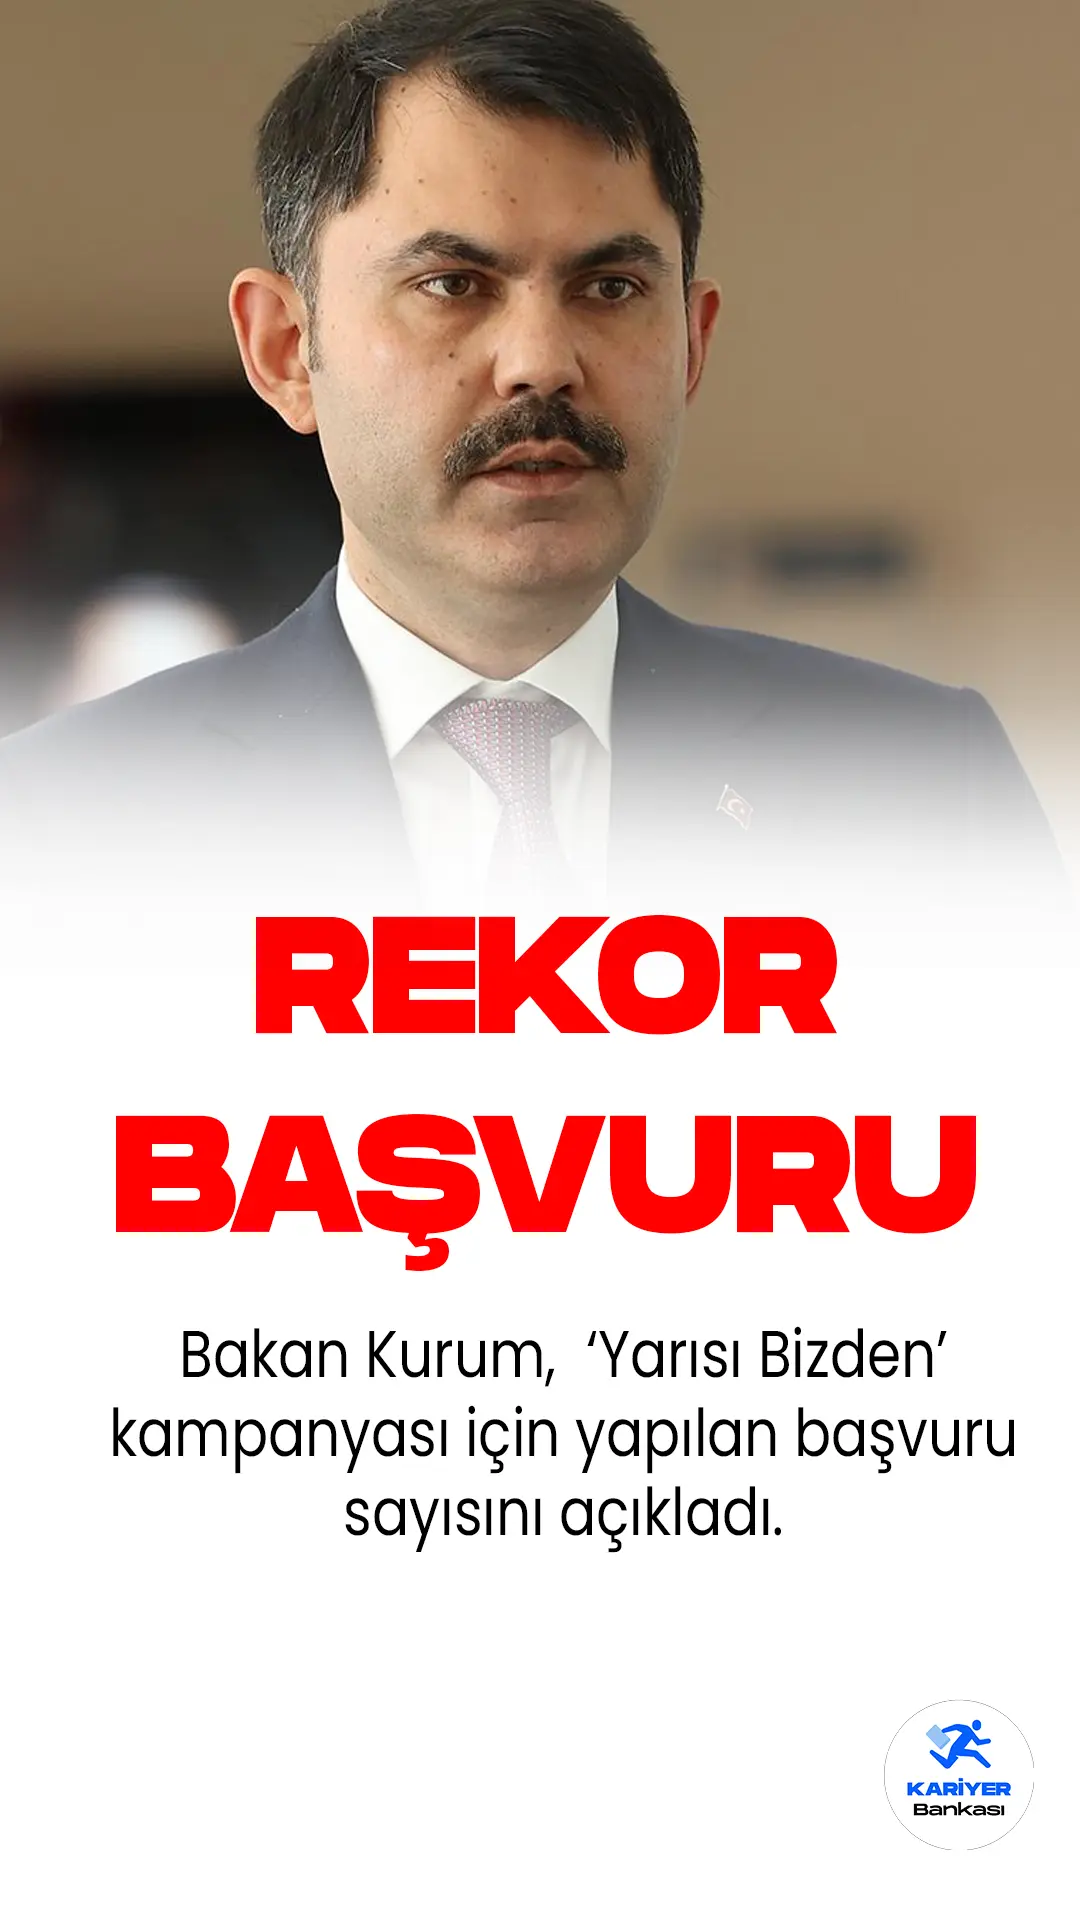 Çevre, Şehircilik ve İklim Değişikliği Bakanı Murat Kurum, İstanbul'da yarısı bizden kampanyasına başvuru sayısını açıkladı.